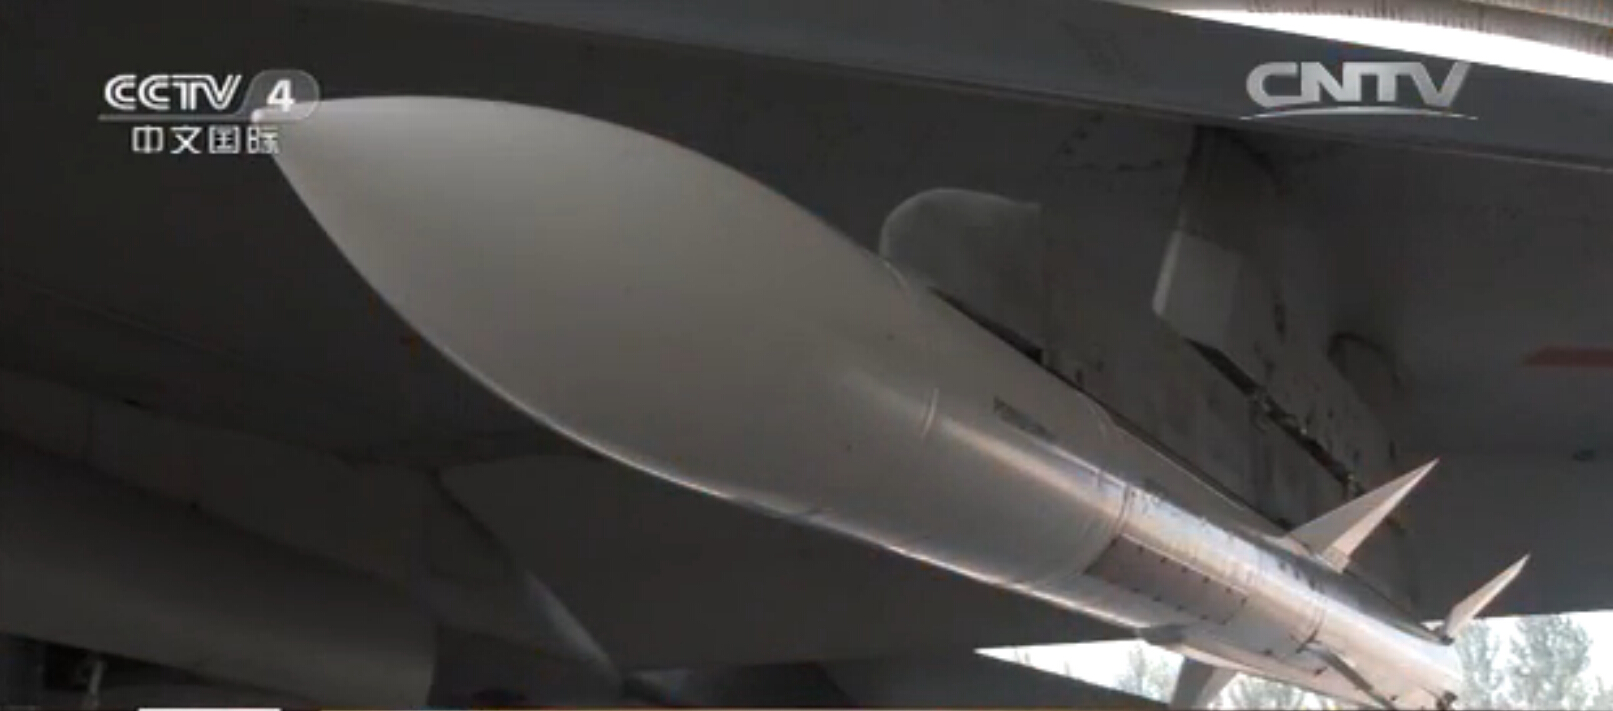 殲-11B挂載的導彈。